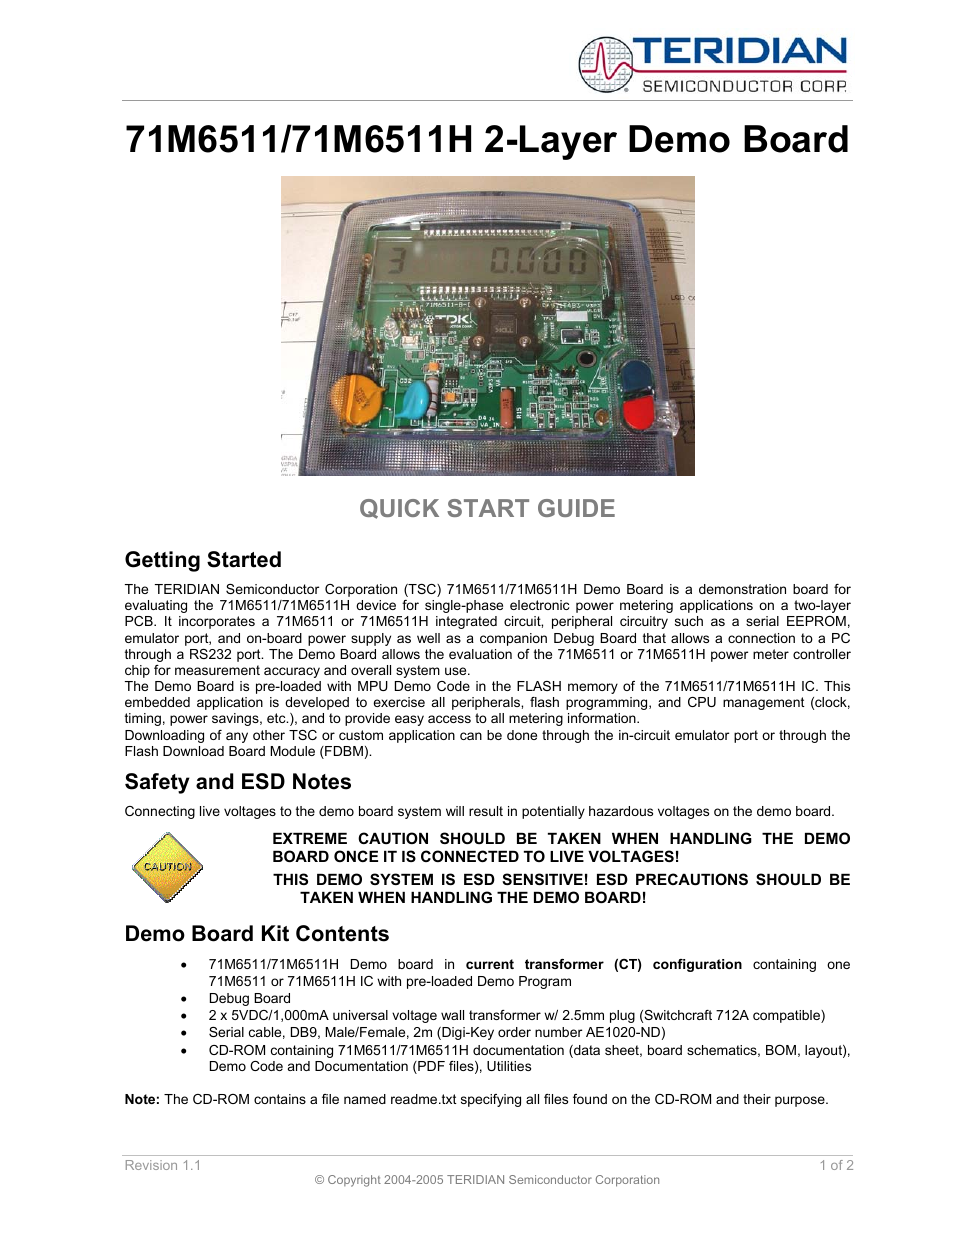 71M6511H 2-Layer Demo Board